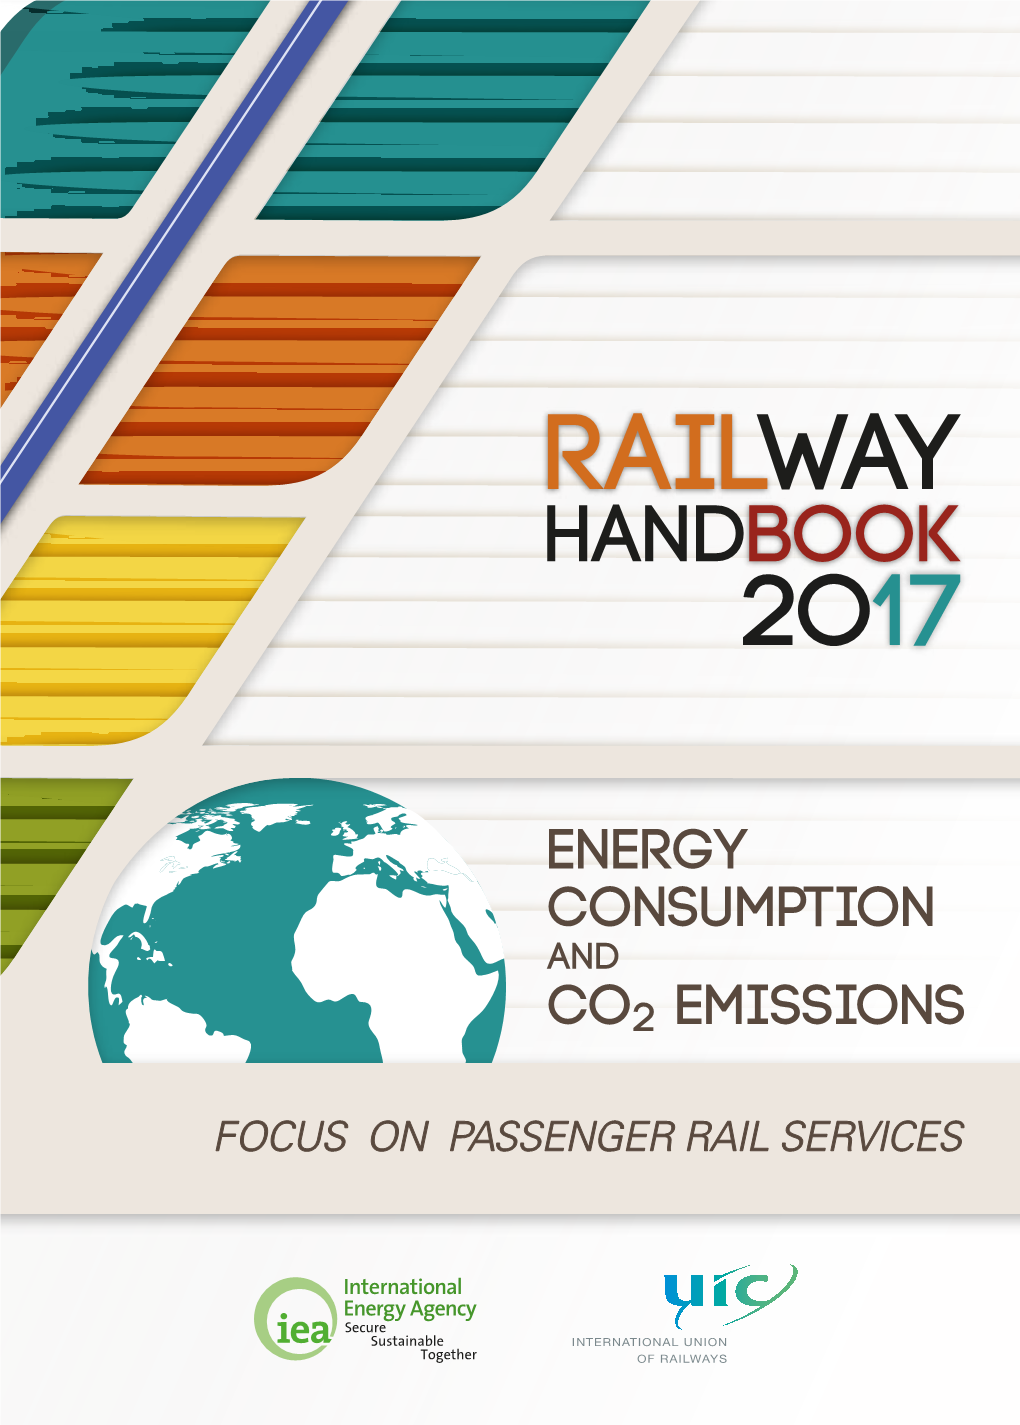 IEA-UIC Railway Handbook 2017